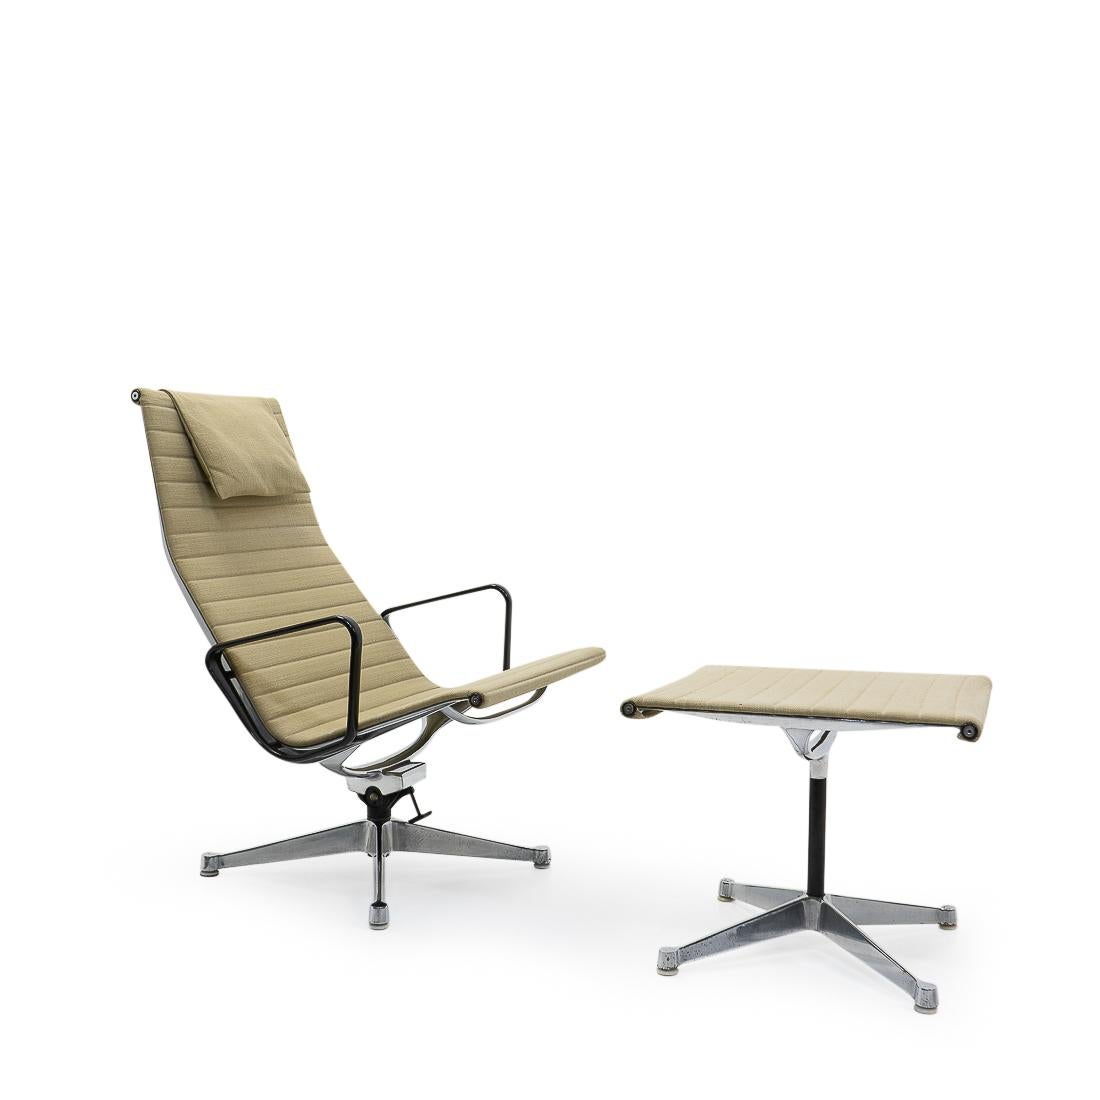 Les chaises Aluminum Group de Charles & Ray Eames sont l'un des designs les plus importants du 20e siècle. Leur design original des années 1950 est toujours d'actualité et confère aux intérieurs du monde entier une touche d'élégance moderne.

Nous